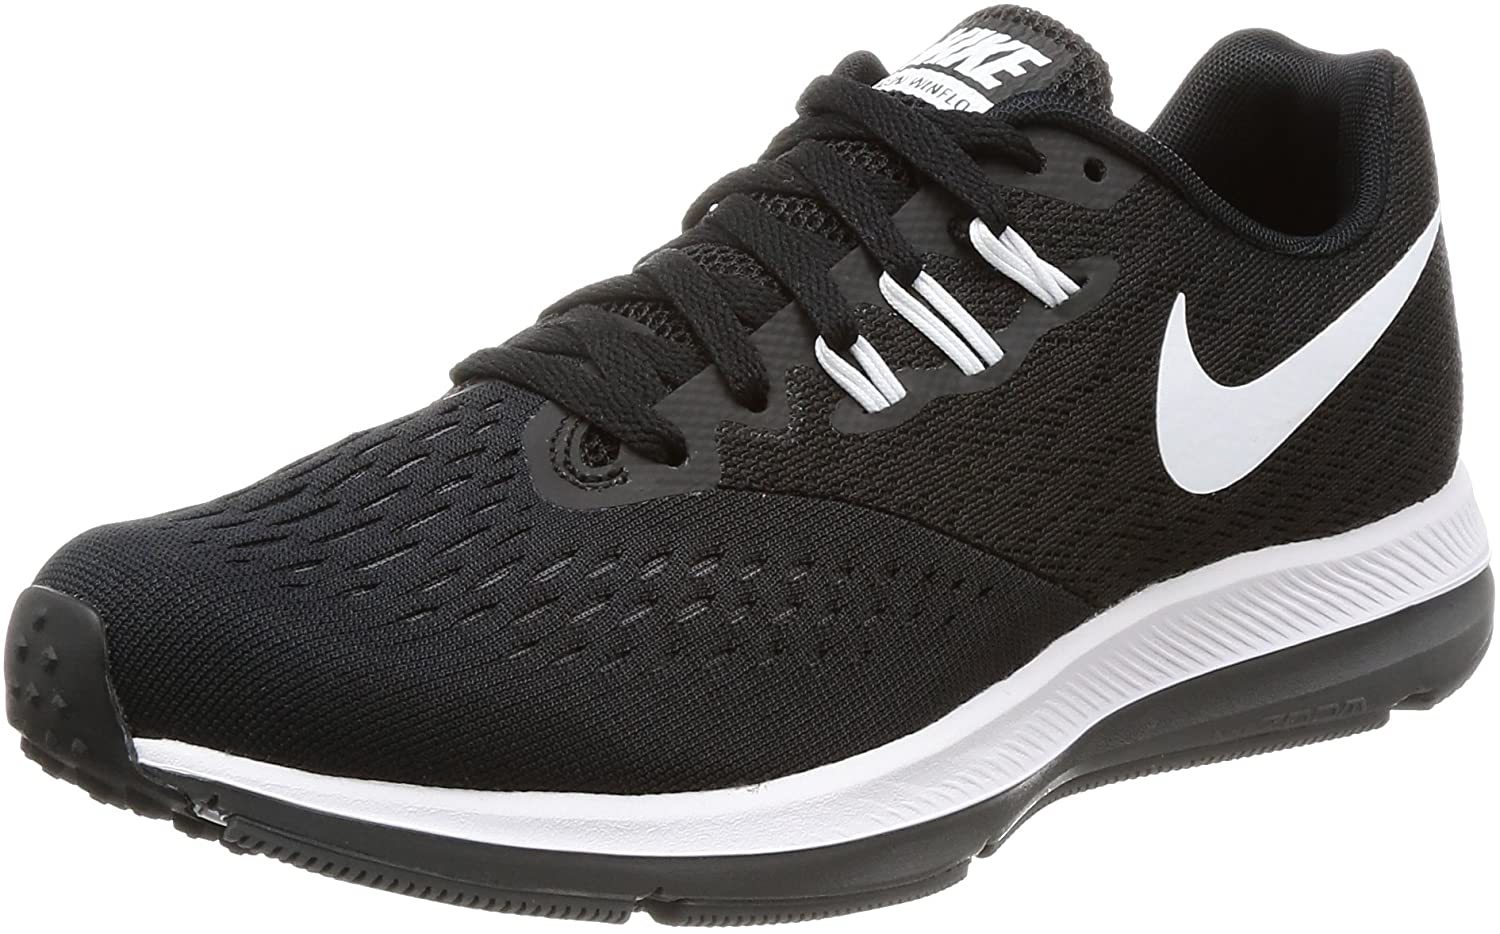 The Nike Air Zoom Winflo 4 Women’s Running Shoe 898485-001 - Women